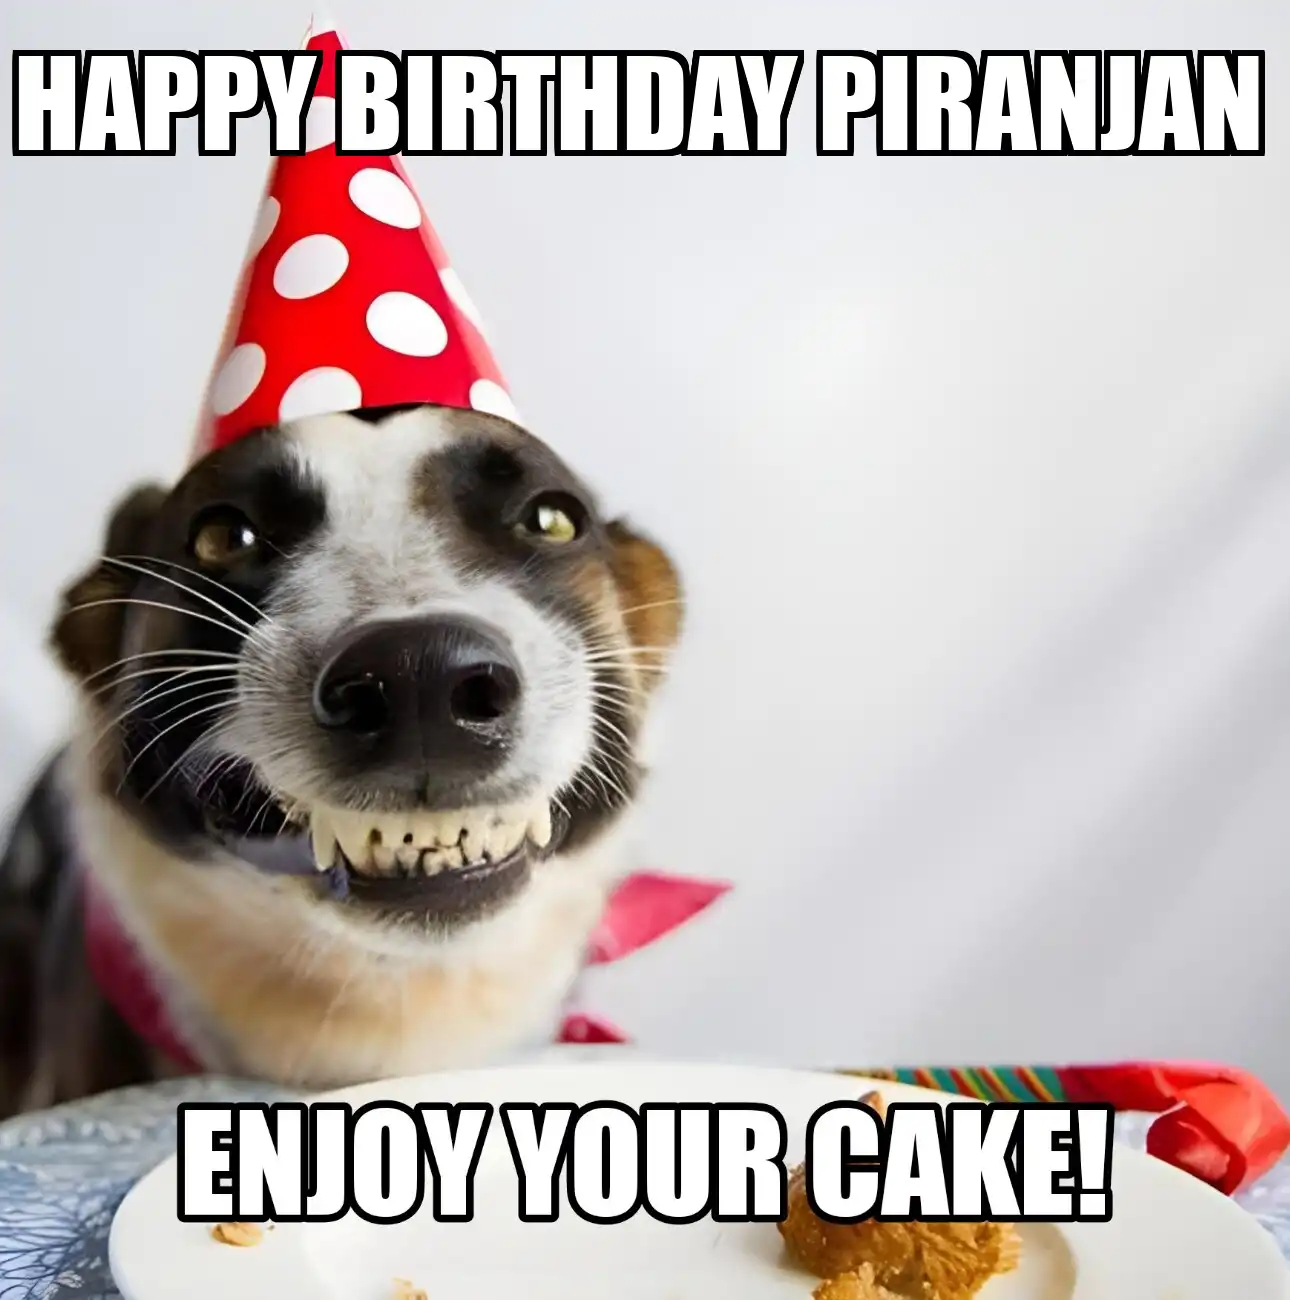 Happy Birthday Piranjan Enjoy Your Cake Dog Meme